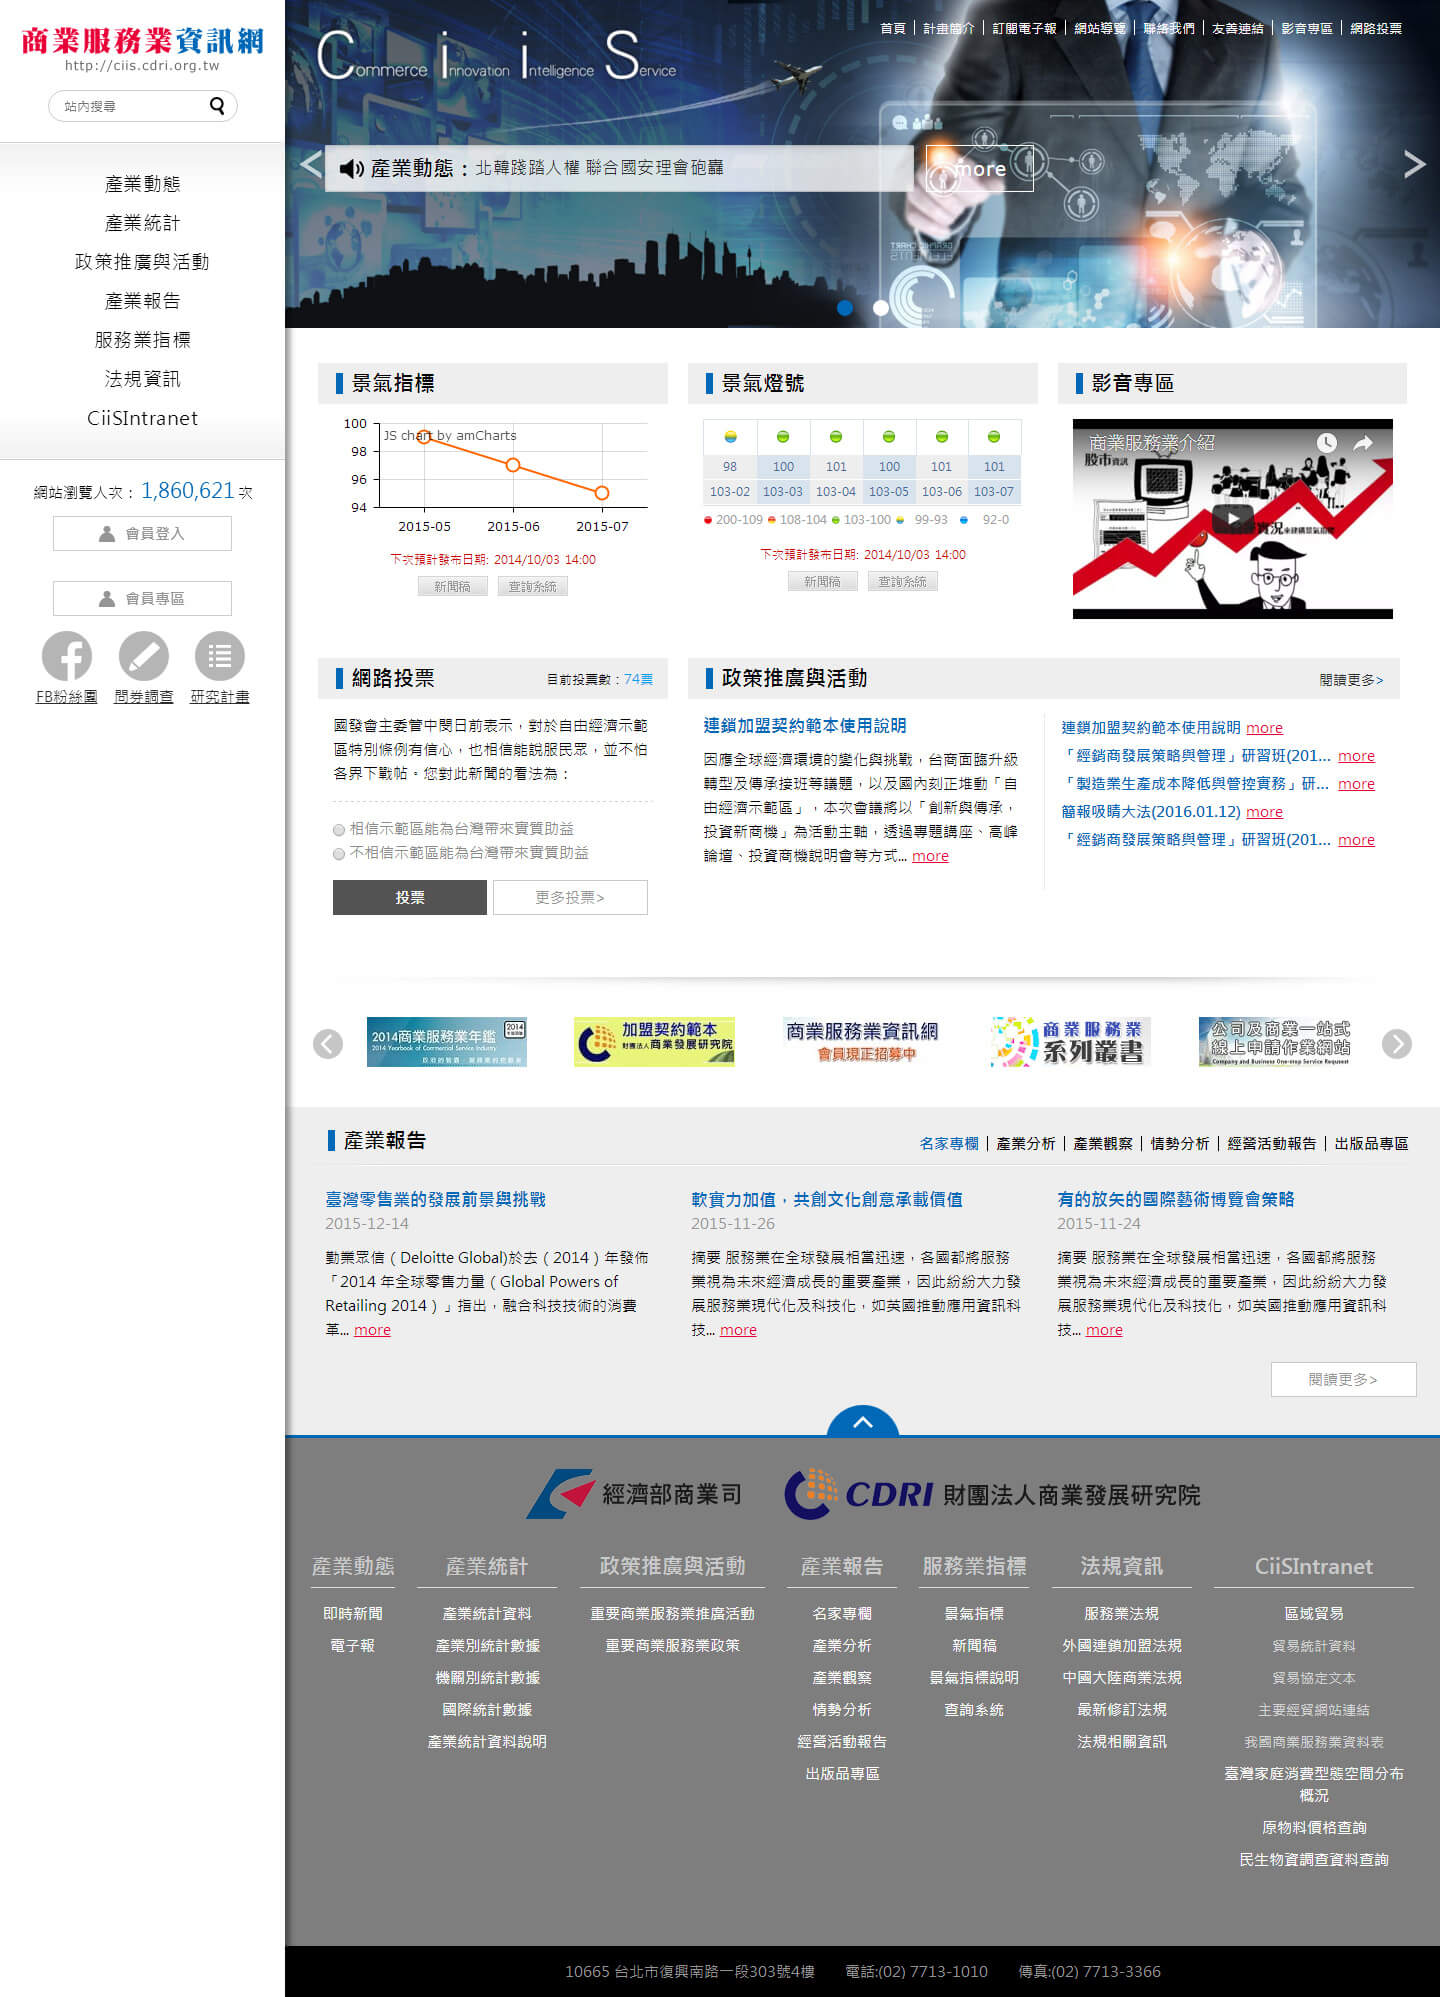 商業服務業資訊網首頁畫面